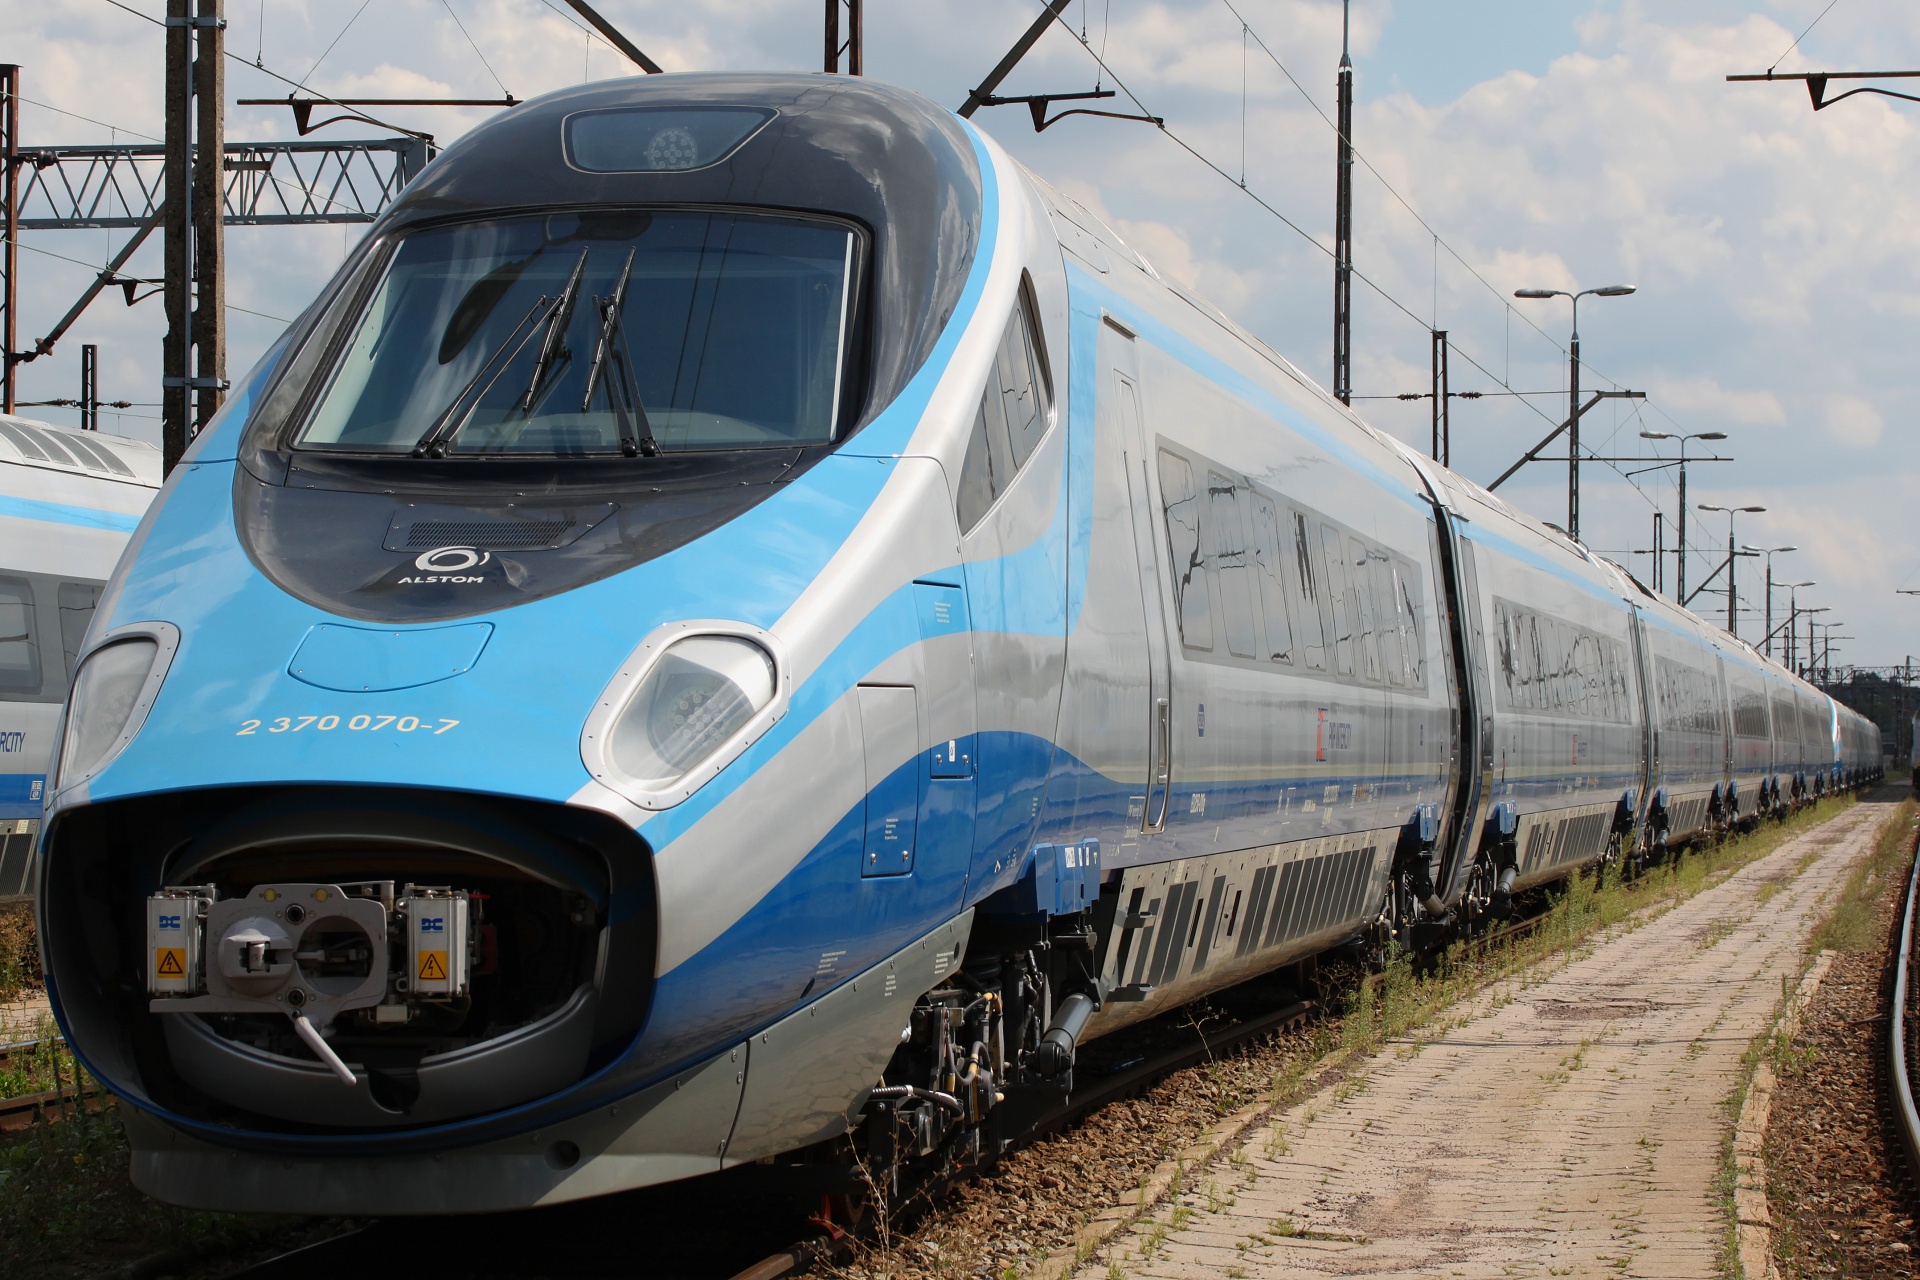 ED250-010 (Pojazdy » Pociągi i lokomotywy » Alstom ETR 610 Pendolino)